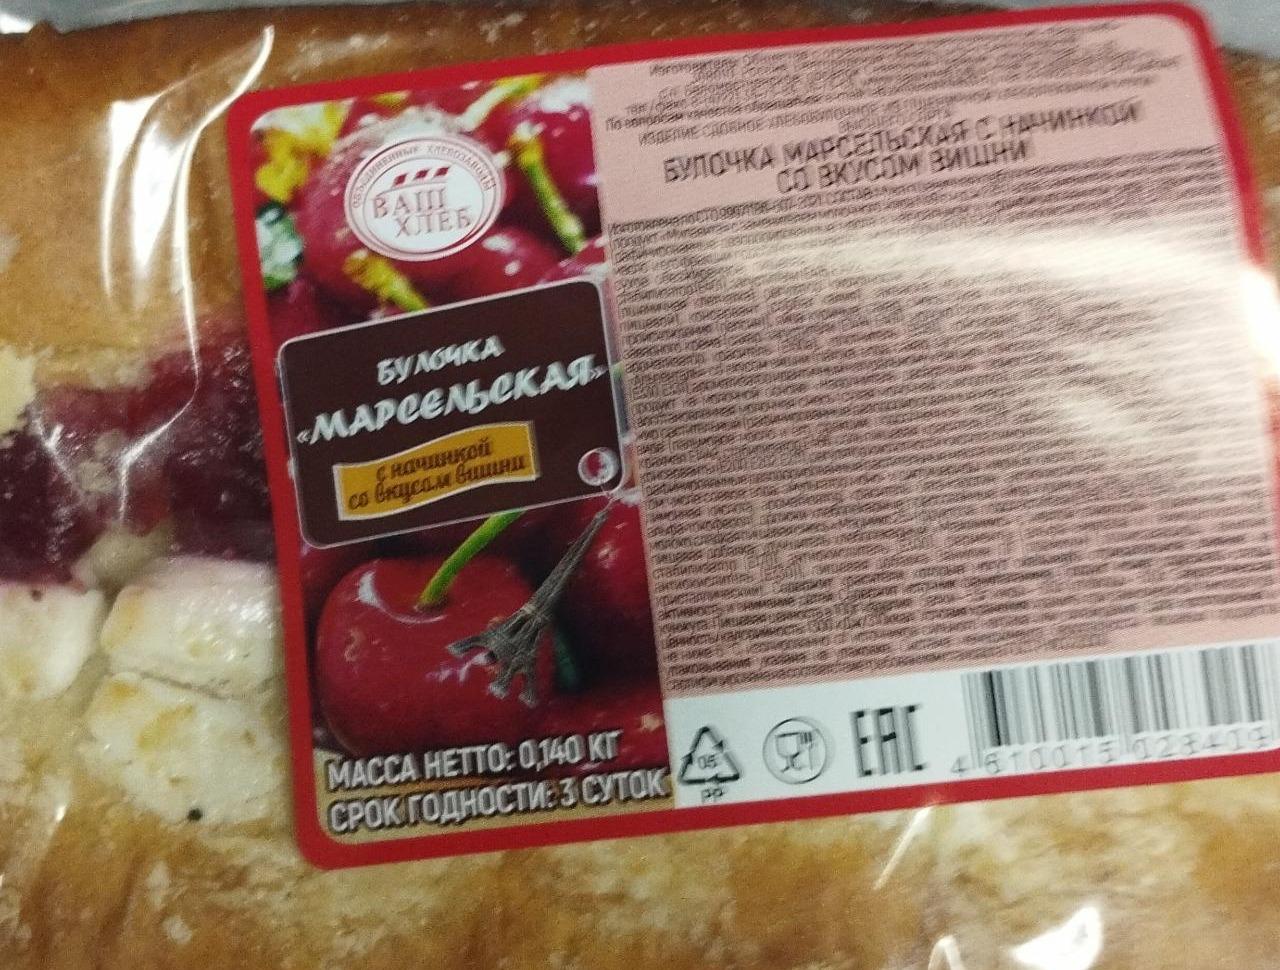 Фото - Булочка Марсельская с начинкой со вкусом вишни Ваш хлеб